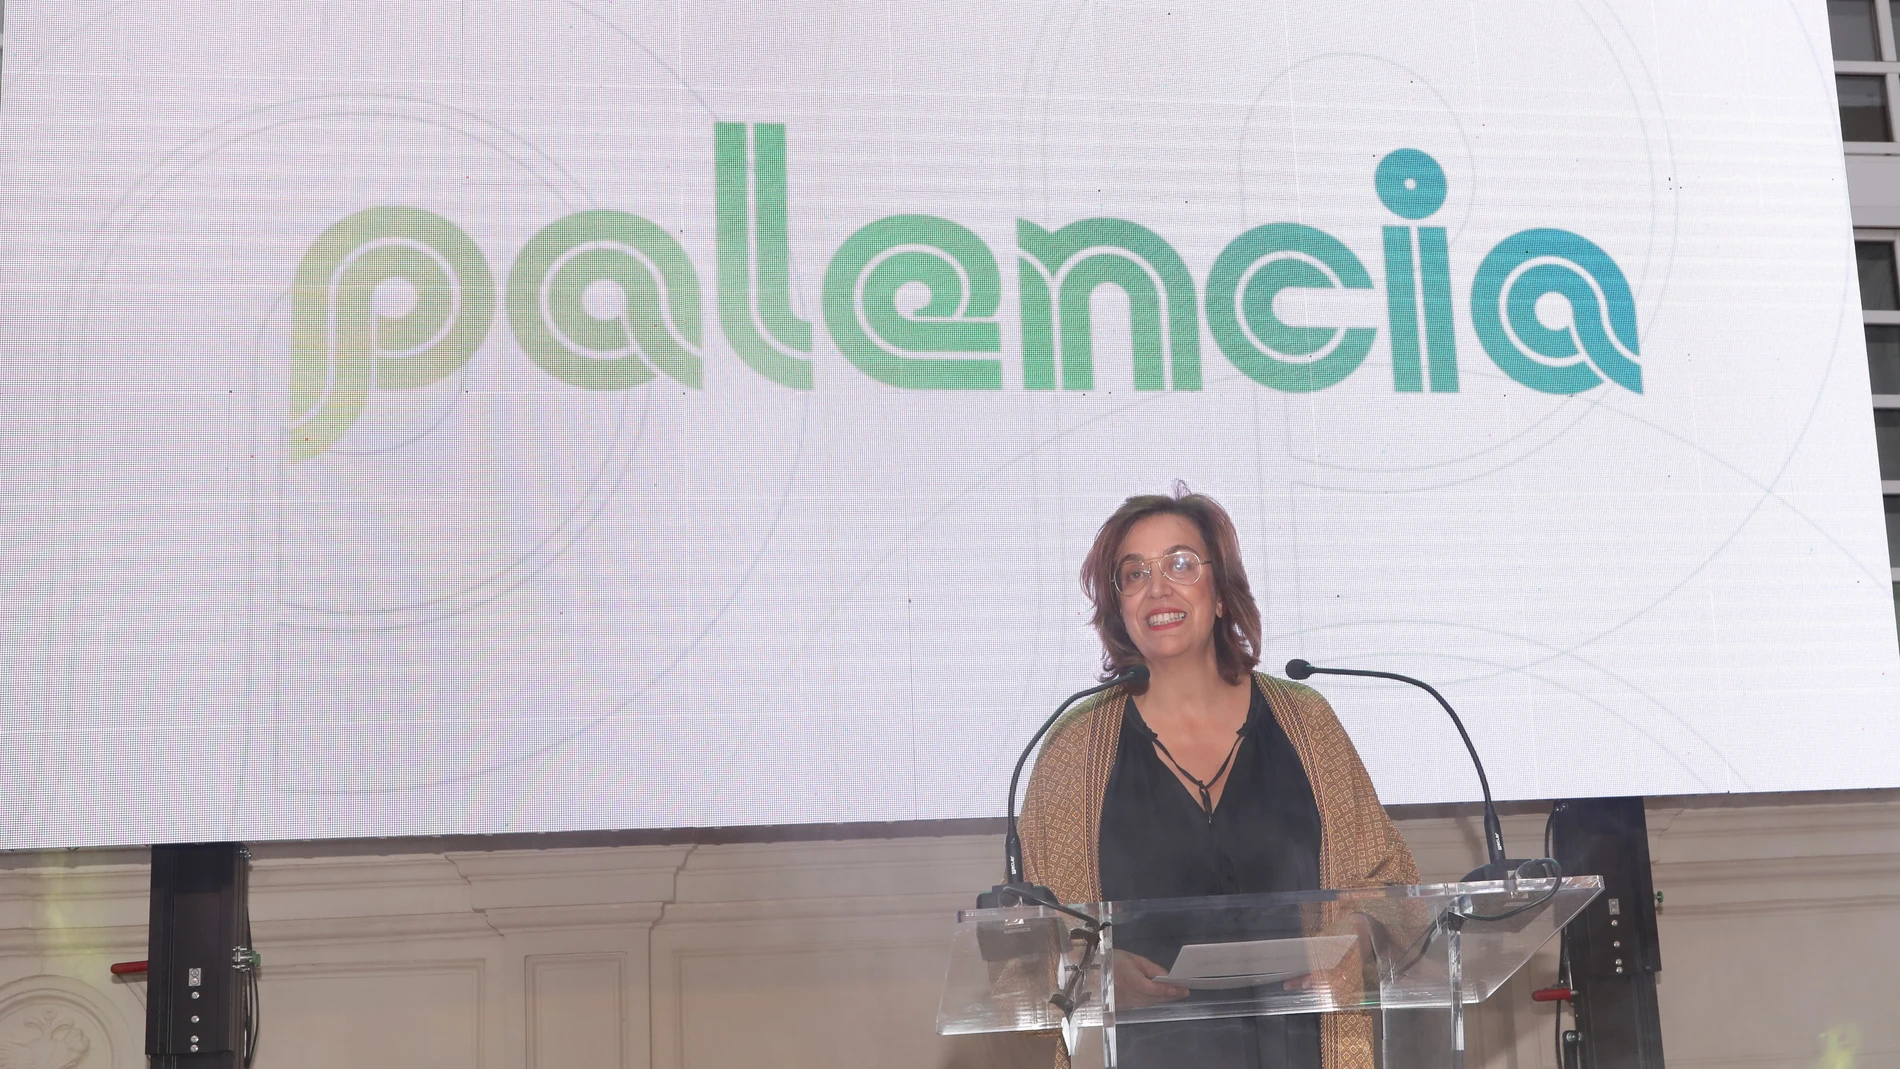 La presidenta de la Diputación, Ángeles Armisén acompañada por la corporación provincial presenta 'Planazo' , nueva marca de turismo